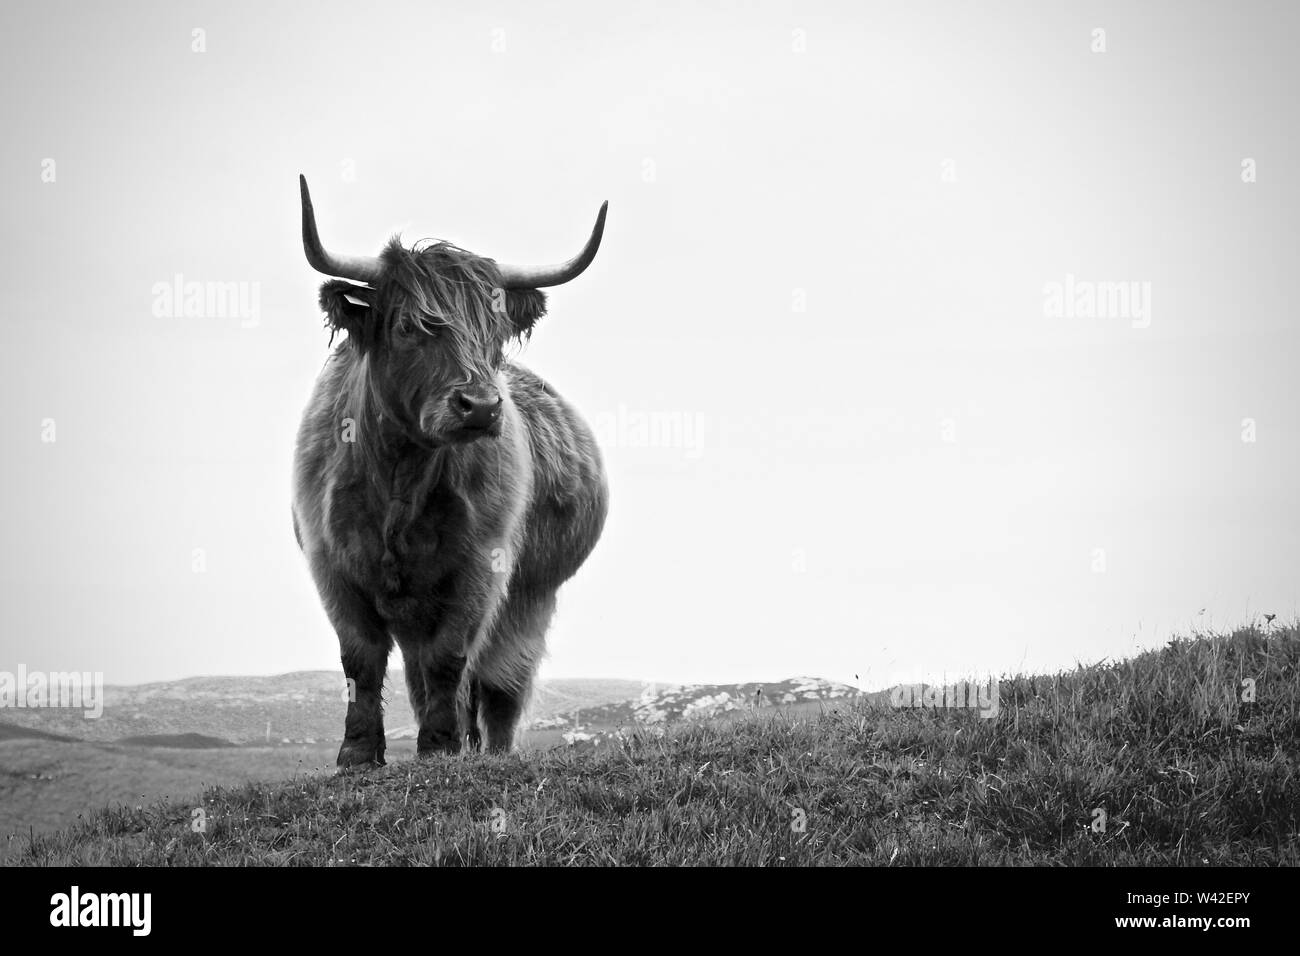 Vache Highland, Scotland Banque D'Images